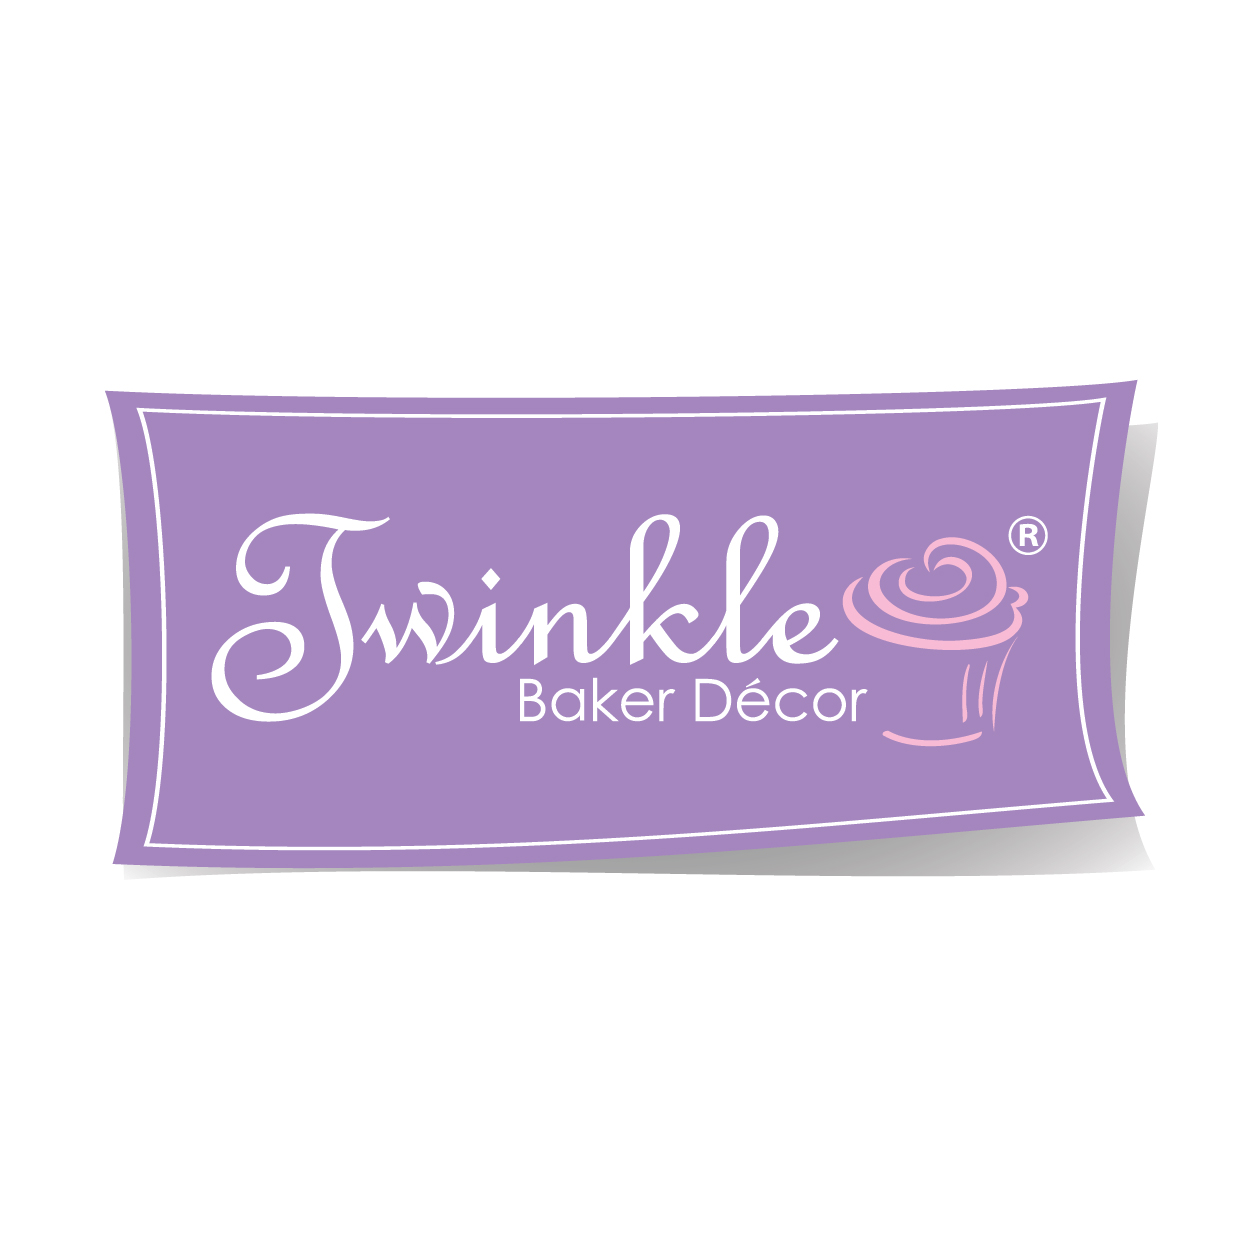 Twinkle Baker Decor